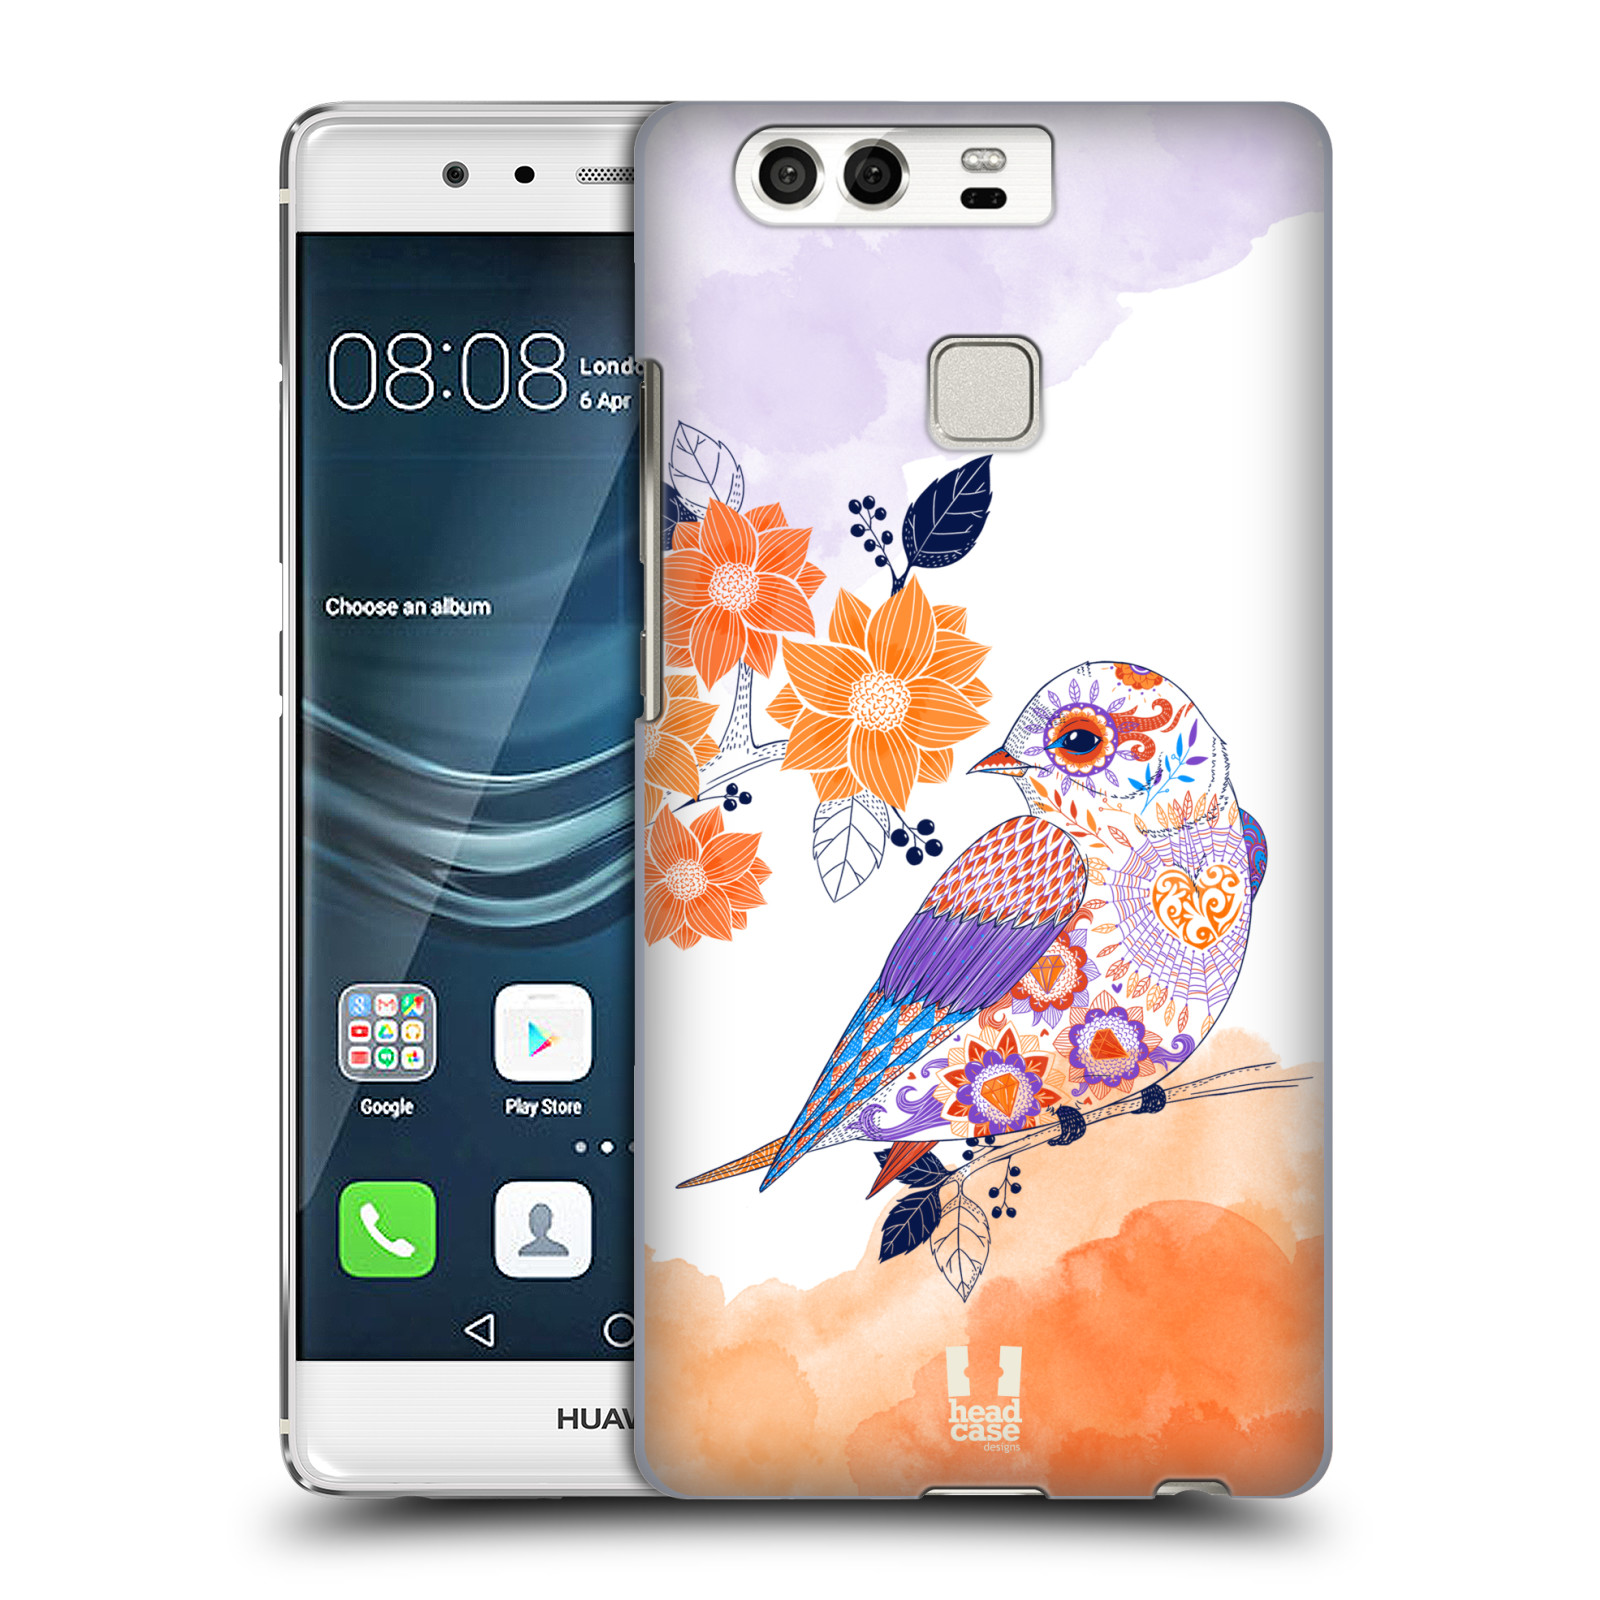 HEAD CASE plastový obal na mobil Huawei P9 / P9 DUAL SIM vzor Květina ptáčci ORANŽOVÁ